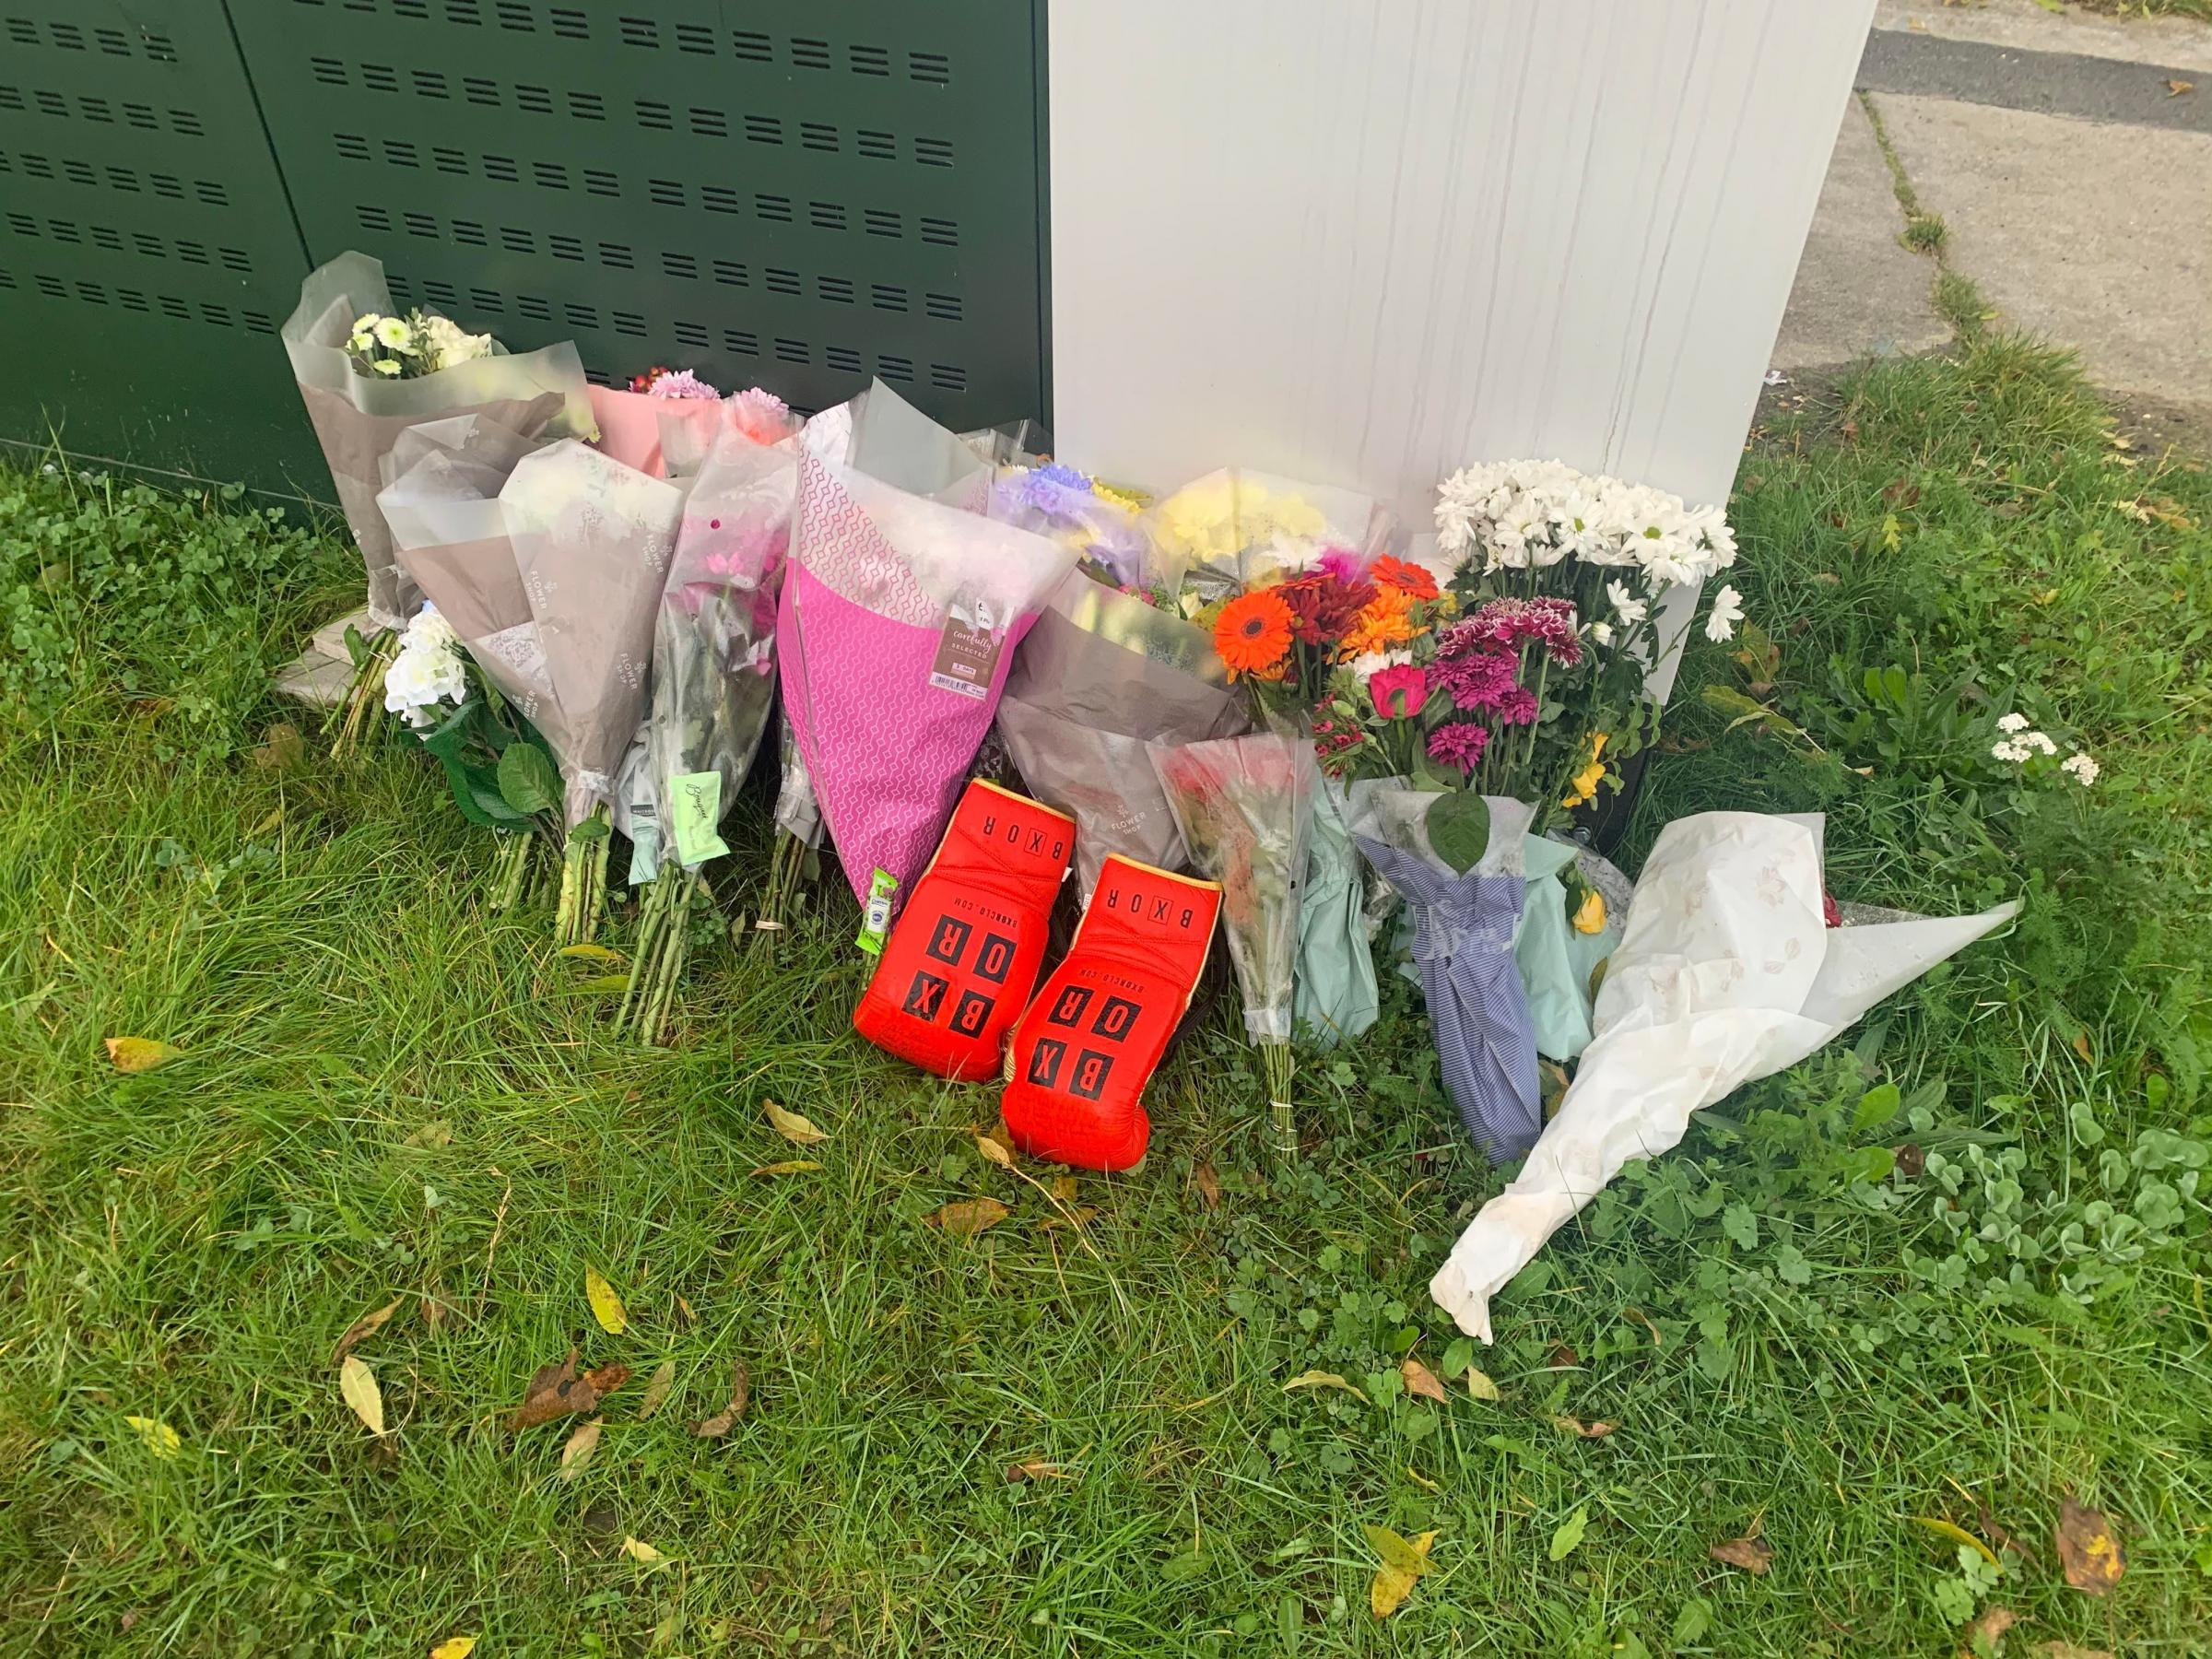 Flowers left in memory of Reece Heffernan.